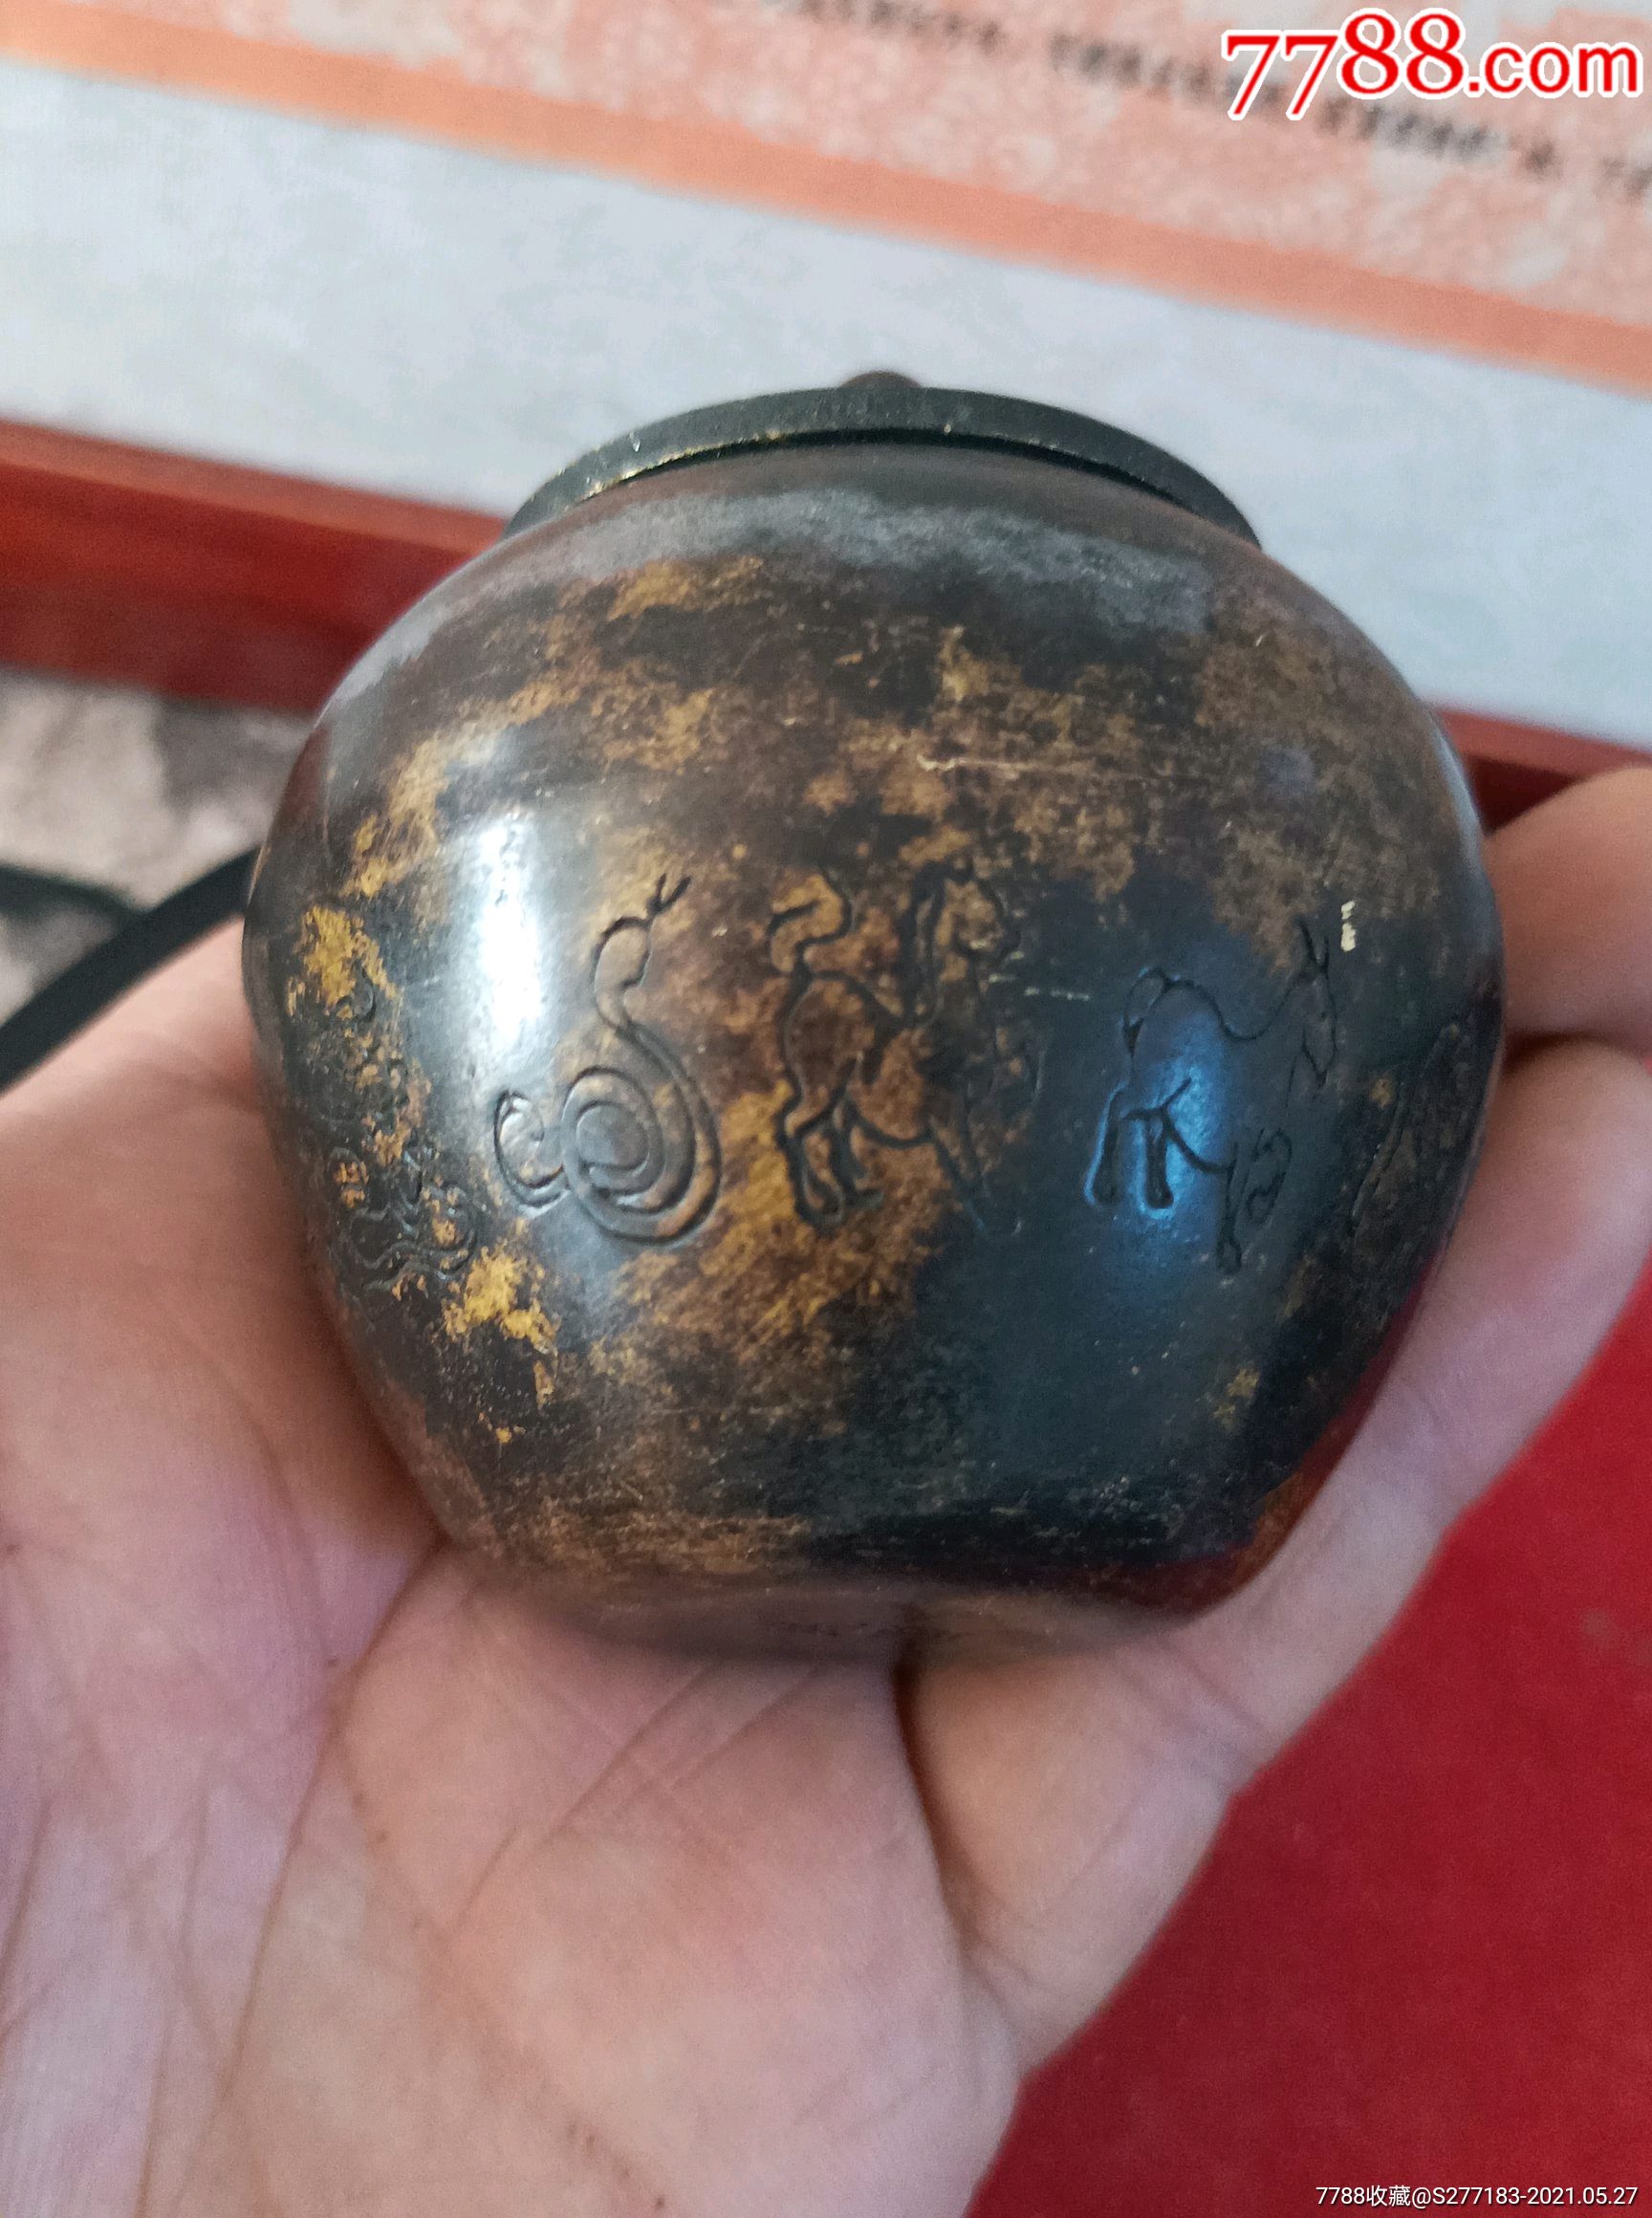 下乡收到底款民国铜罐一个,雕刻十二生肖,保存完整,品相如图,尺寸如图